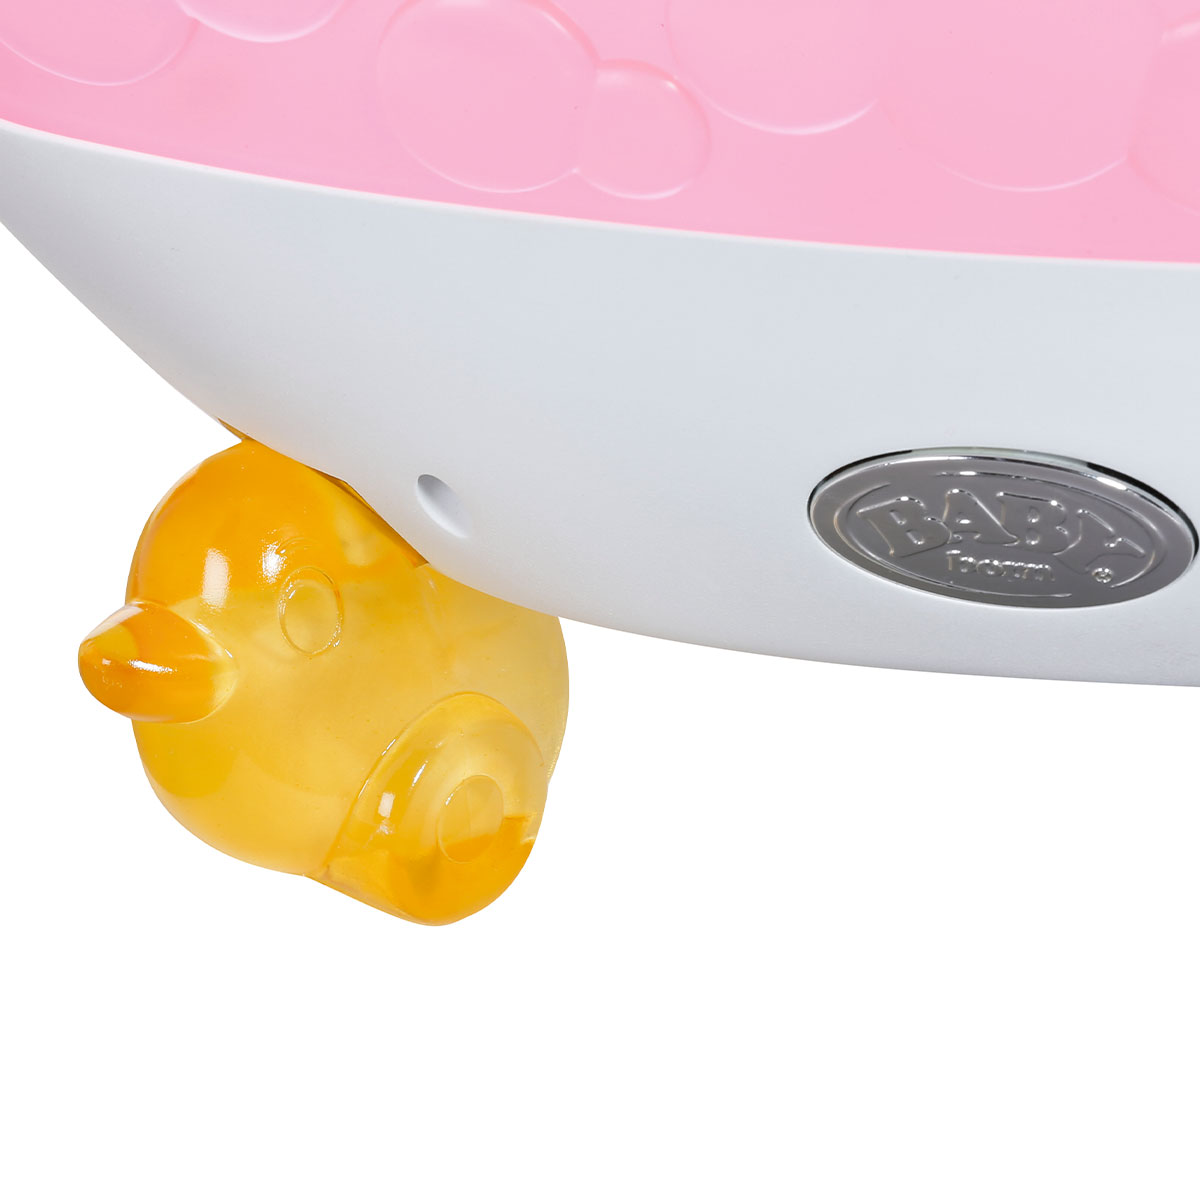 Автоматическая ванночка для куклы BABY born Забавное купание (828366)